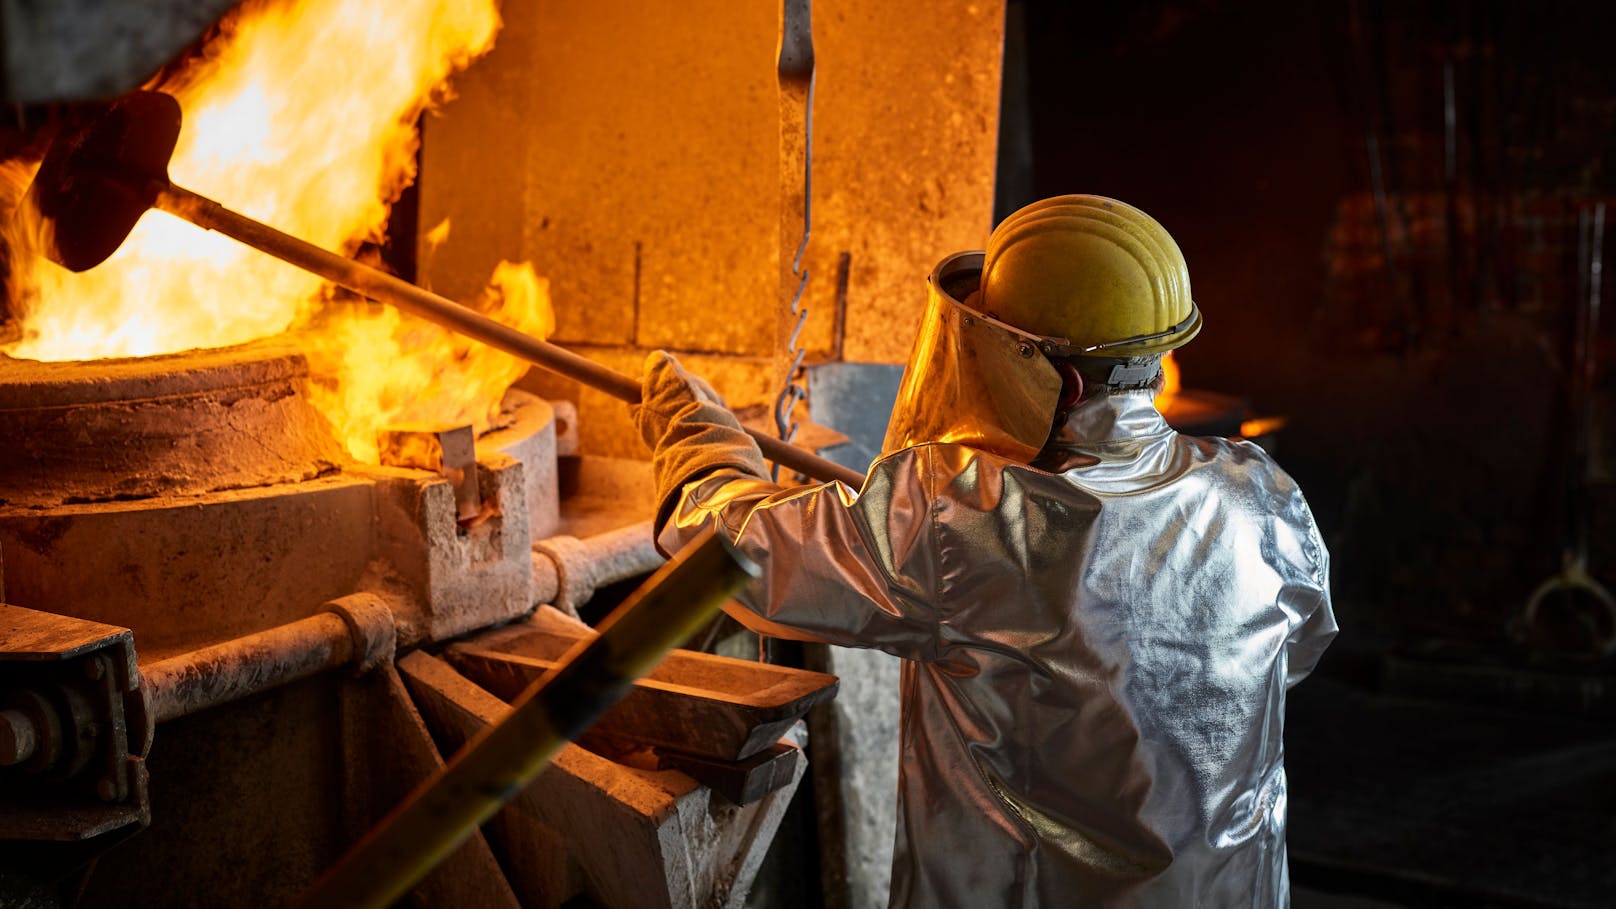 Am 19. September starten die Lohnverhandlungen für 130.000 Beschäftigte in der metalltechnischen Industrie.